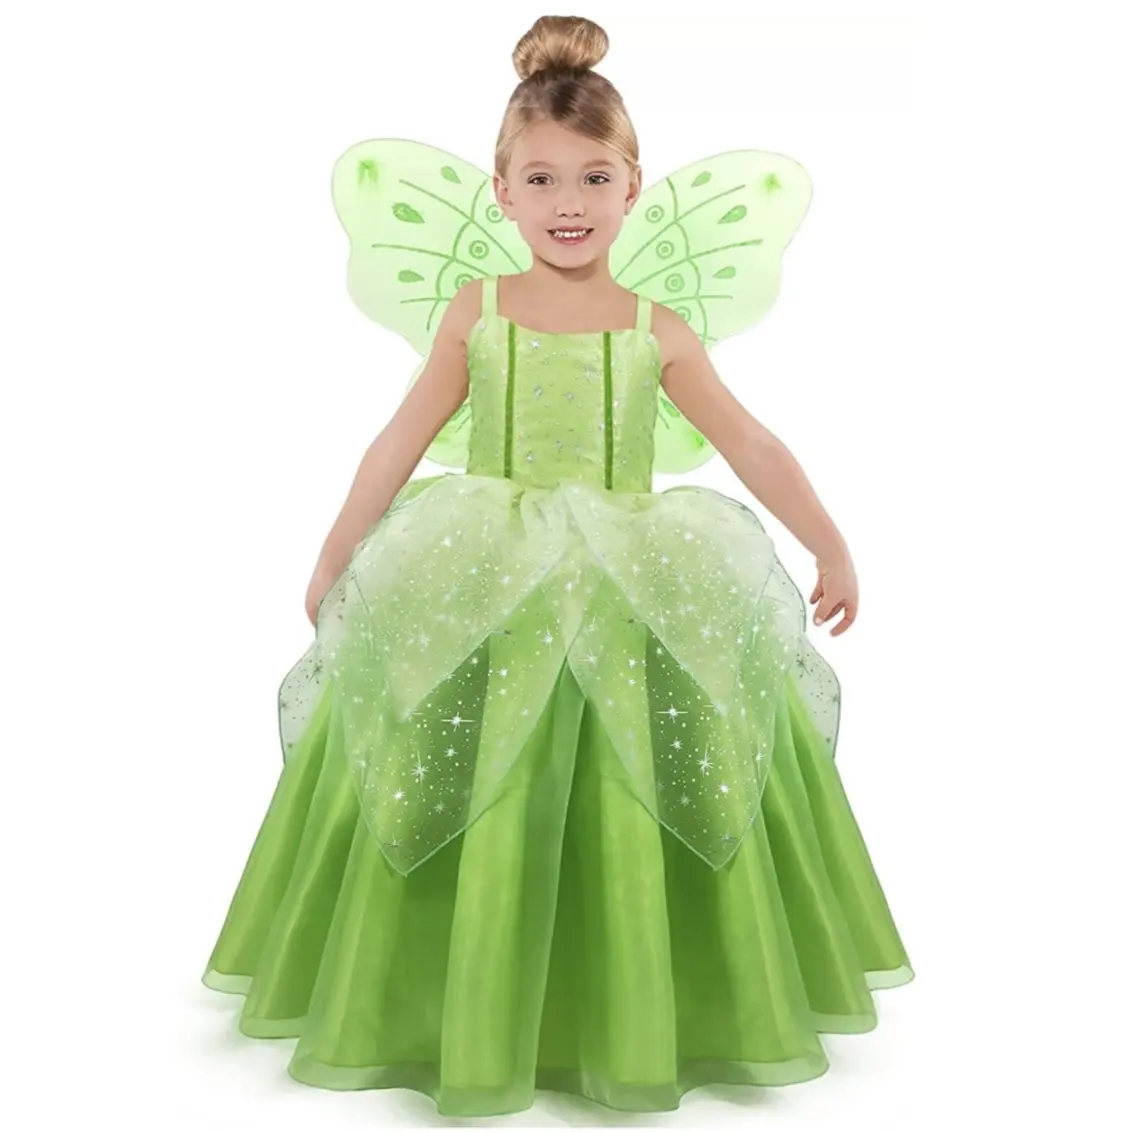 Frauen und Mädchen Party oder Karneval Cosplay Prinzessin Kleid mit Flügeln 2 Stück Set Peter Pan Tinker Bell Fairy Kostüme für Halloween